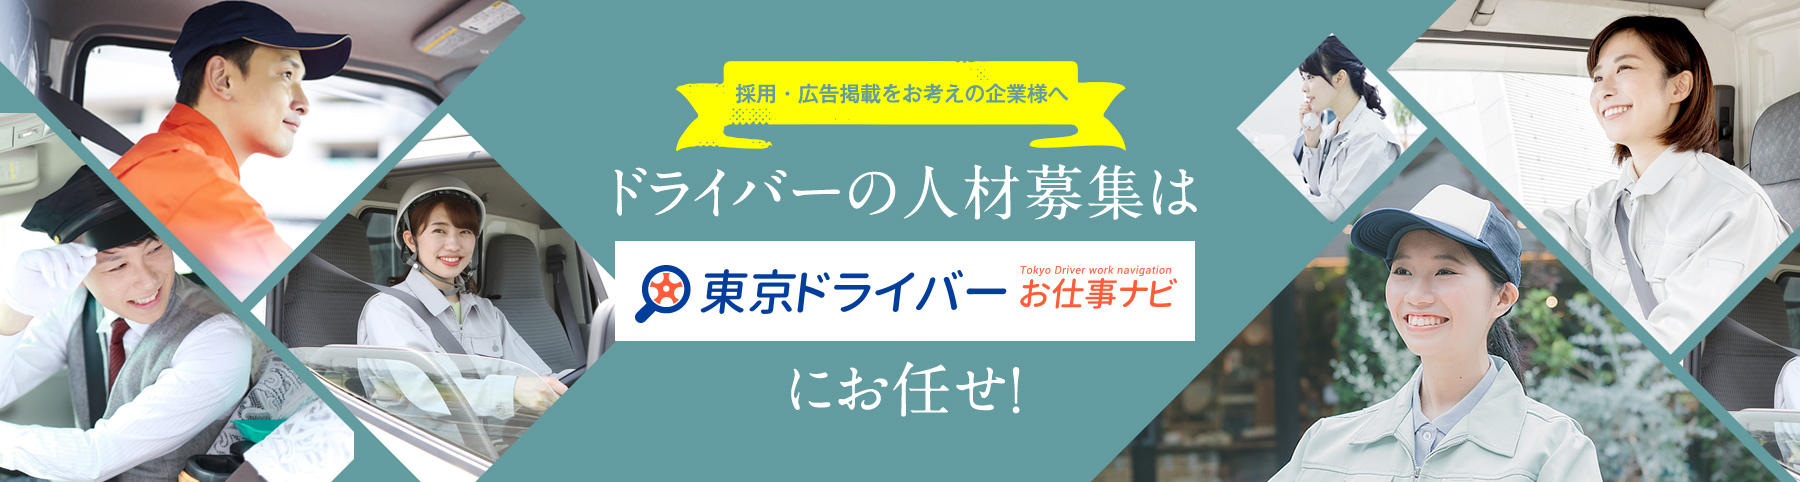 
    採用・広告掲載をお考えの企業様へ
    ドライバーの人材募集は「東京ドライバーお仕事ナビ」にお任せ！
    